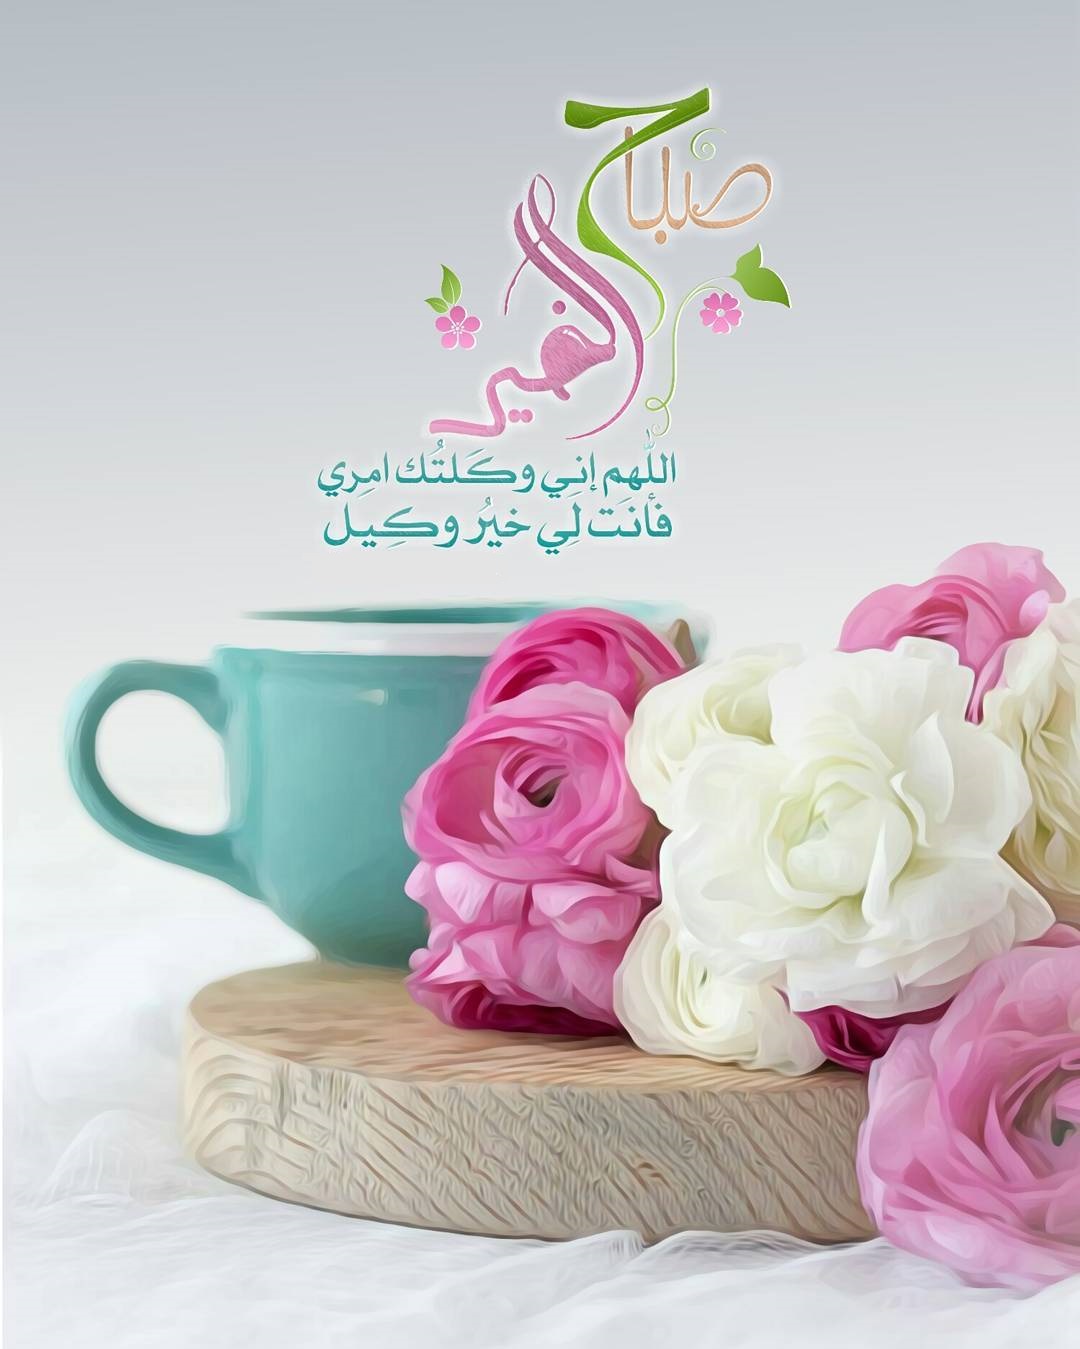 2090 10 صور حب صباح الخير - اجمل كلمات الصباح الرومانسيه عبد الحي